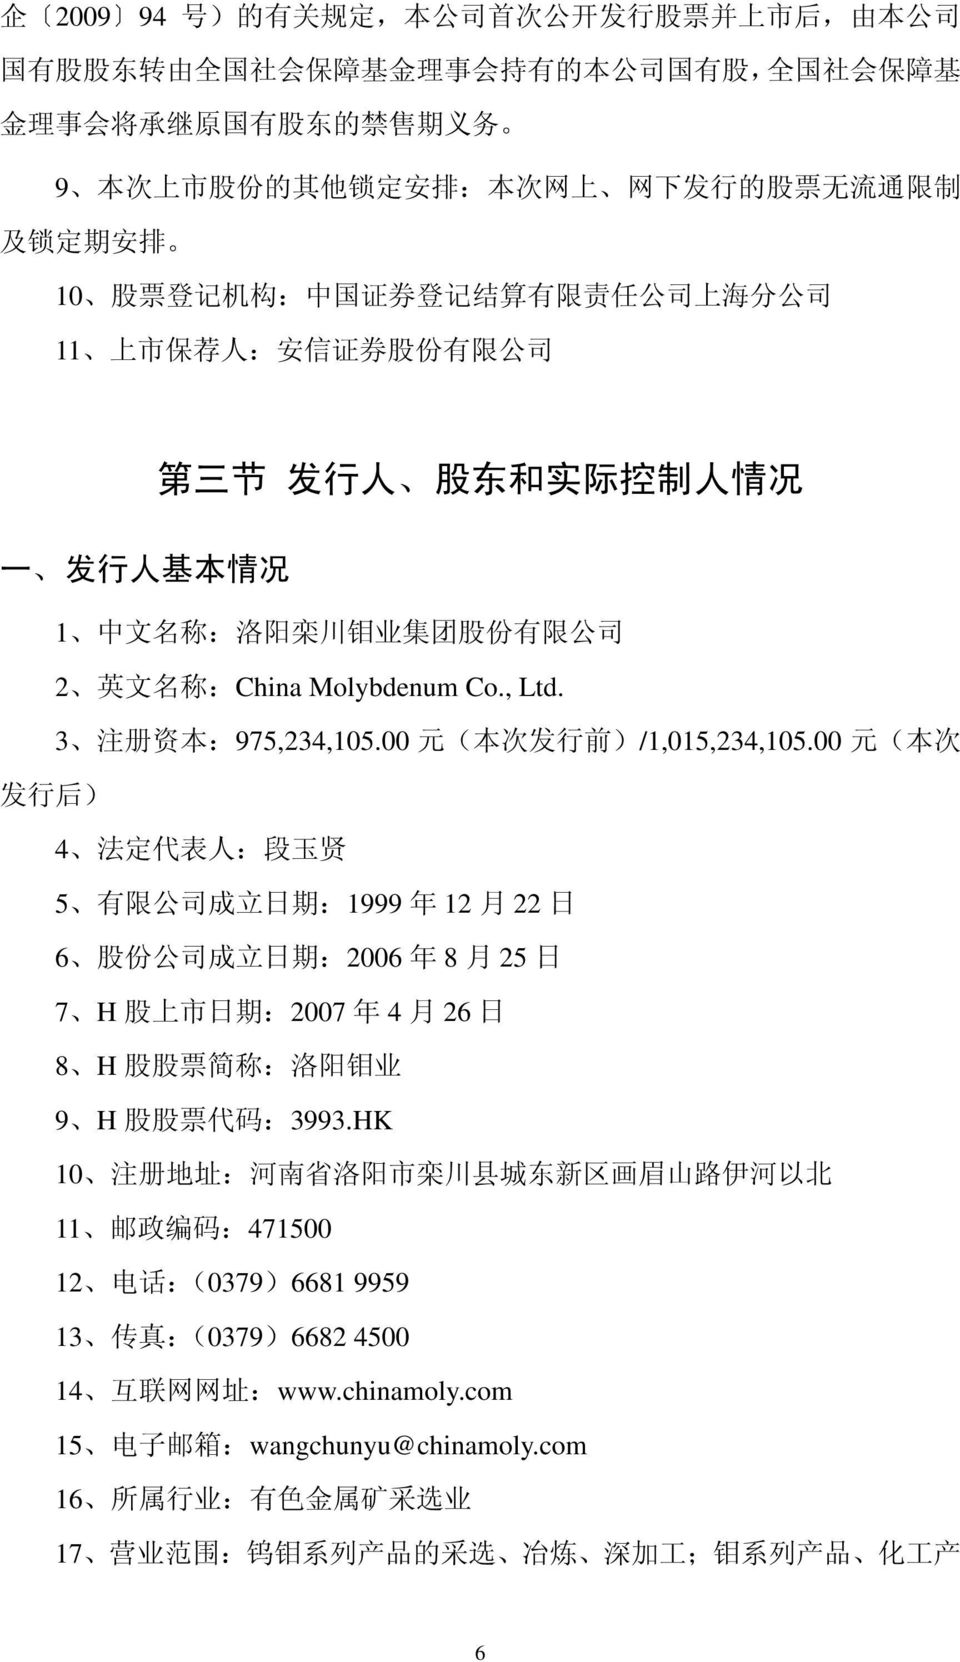 川 钼 业 集 团 股 份 有 限 公 司 2 英 文 名 称 :China Molybdenum Co., Ltd. 3 注 册 资 本 :975,234,105.00 元 ( 本 次 发 行 前 )/1,015,234,105.